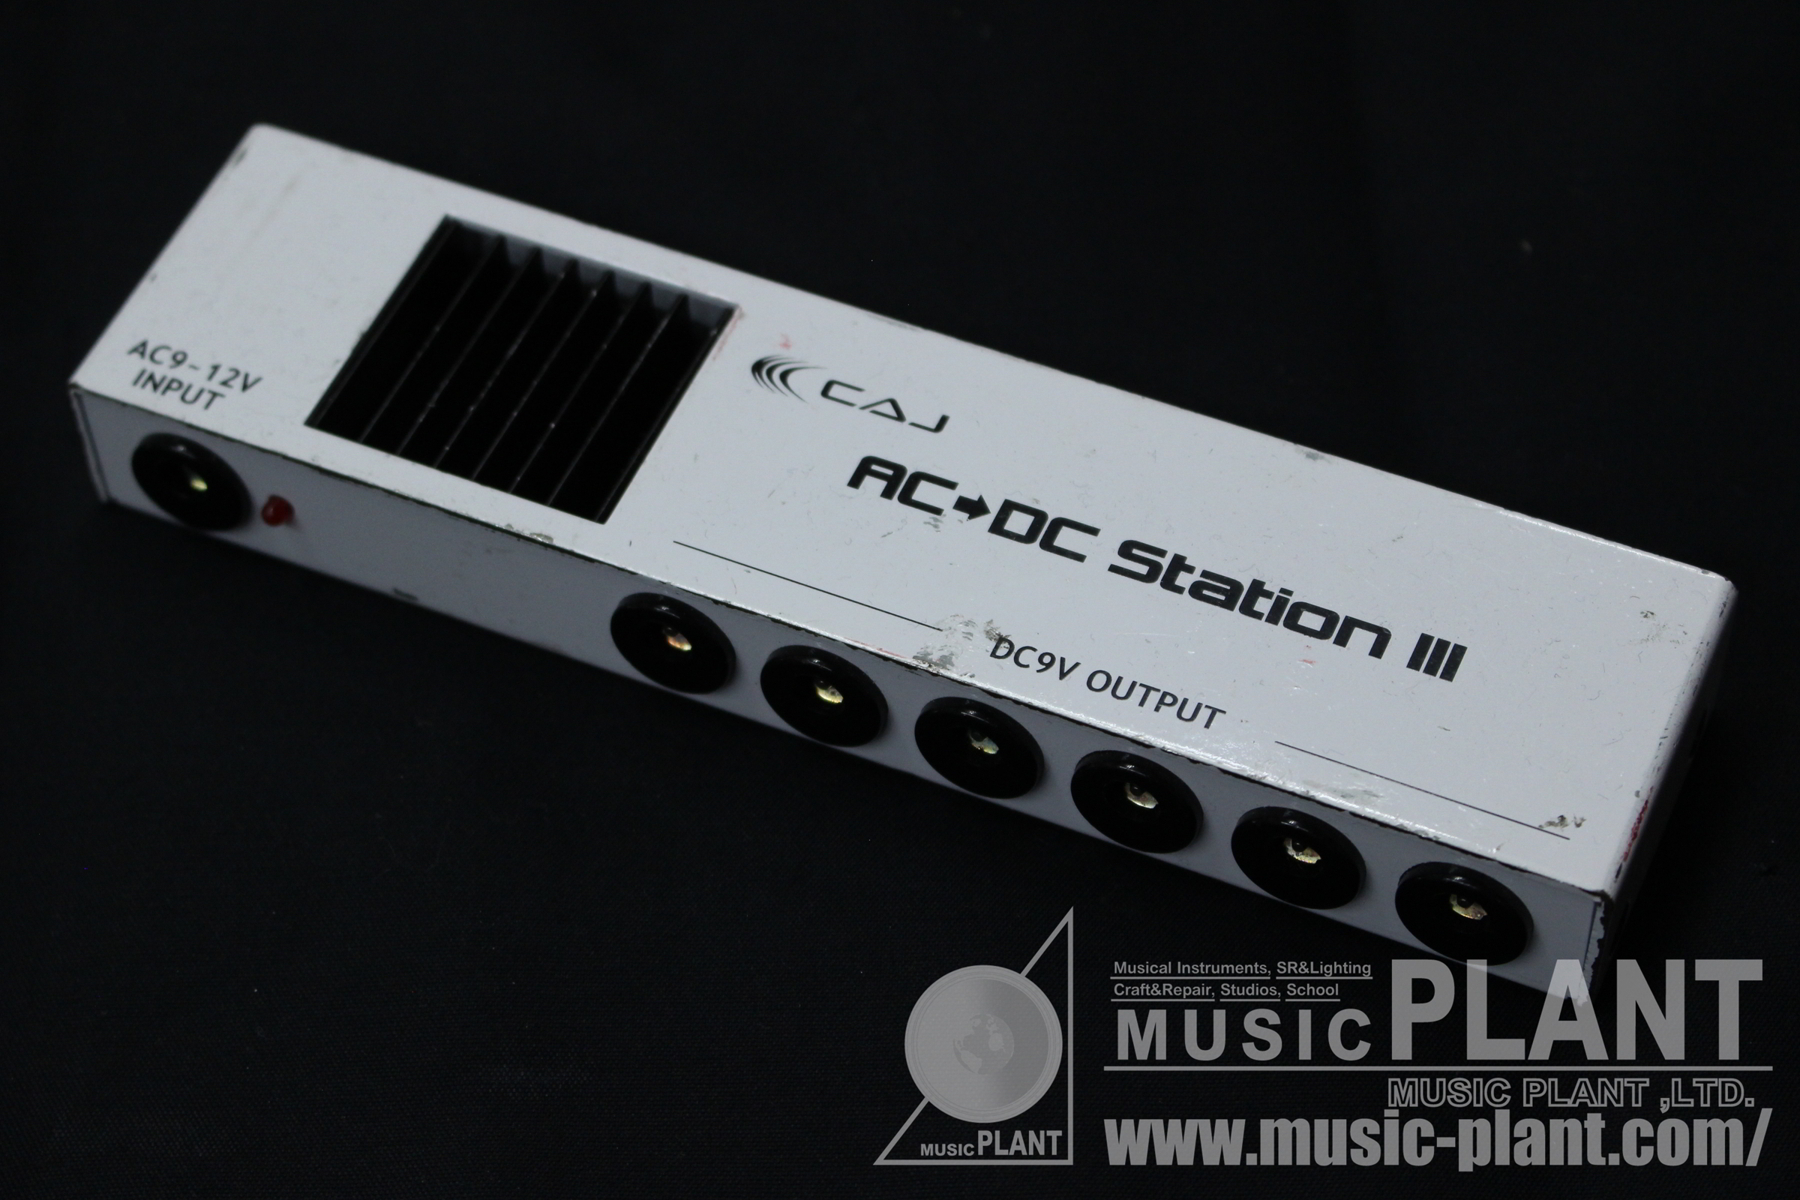 Custom Audio Japan (CAJ) パワーサプライAC/DC Station III中古()売却済みです。あしからずご了承ください。 | MUSIC PLANT WEBSHOP